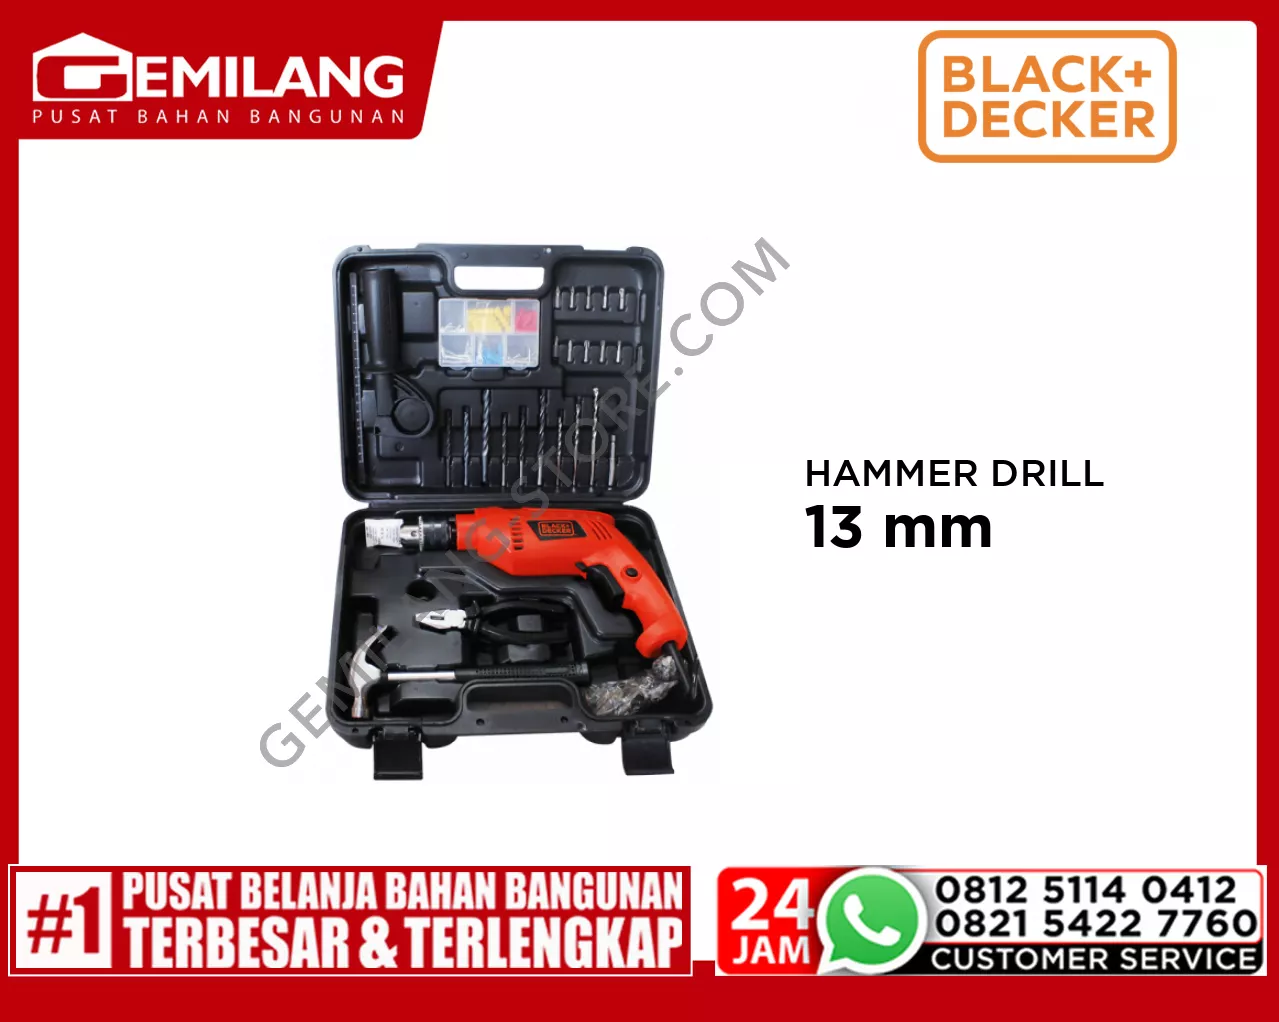 BLACK + DECKER HAMMER DRILL 13mm HD555KOPR-B1